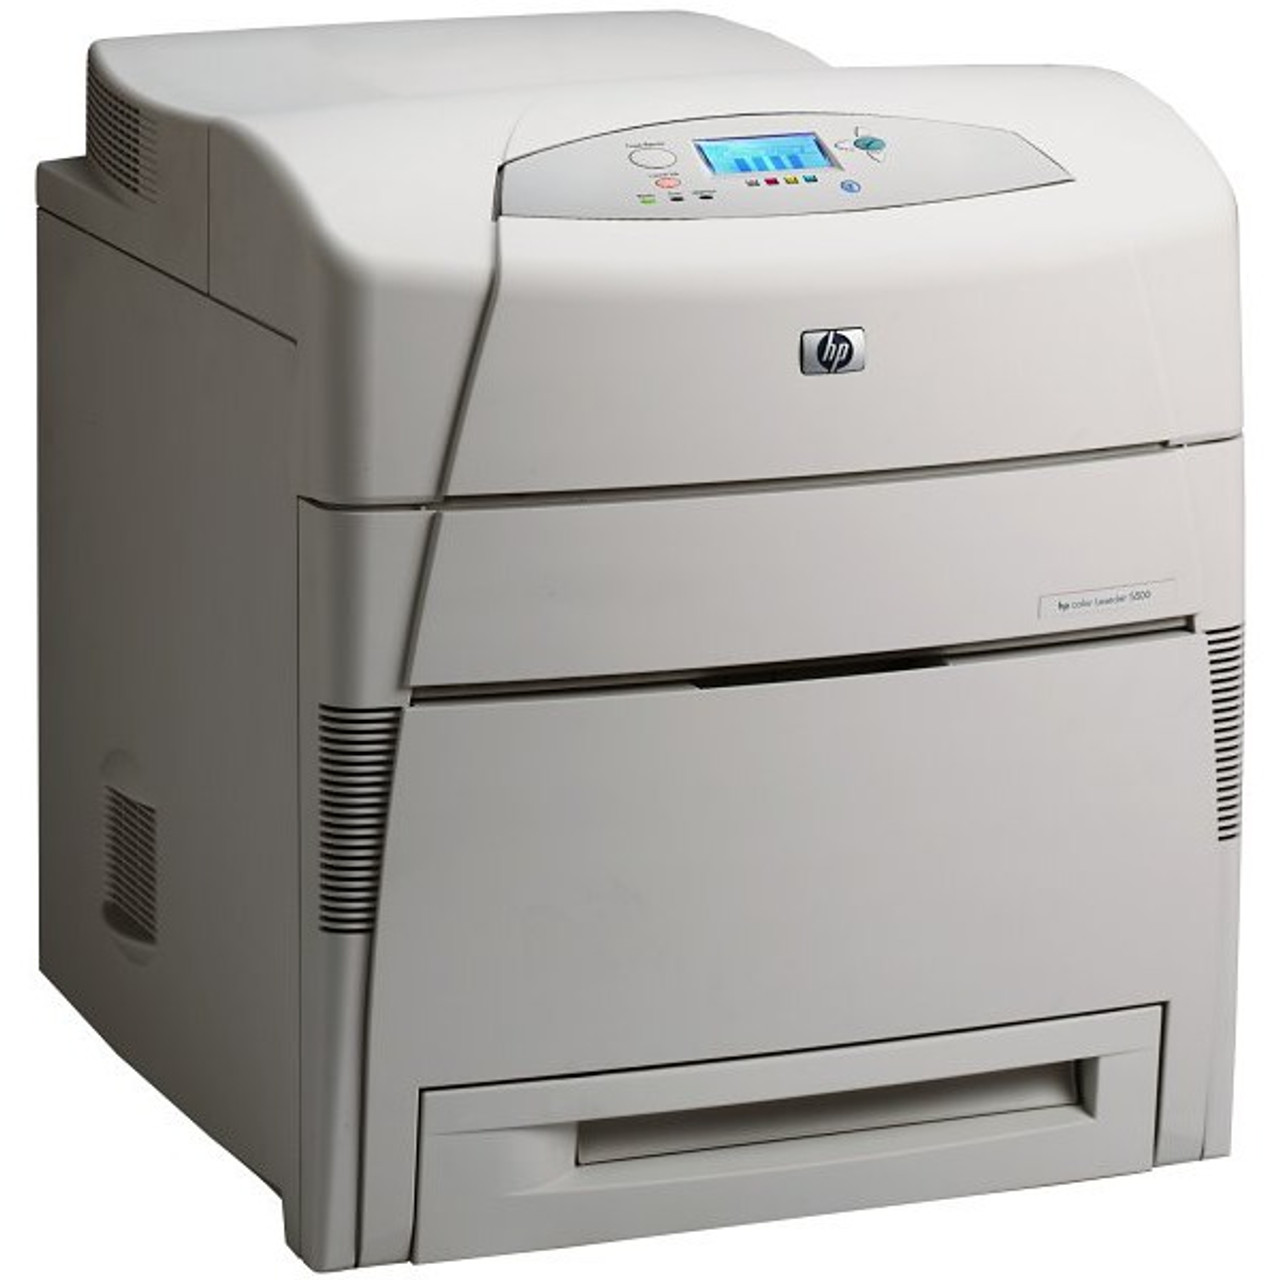 HP Color LaserJet 5500dn - C9657A - HP Laser Printer for sale